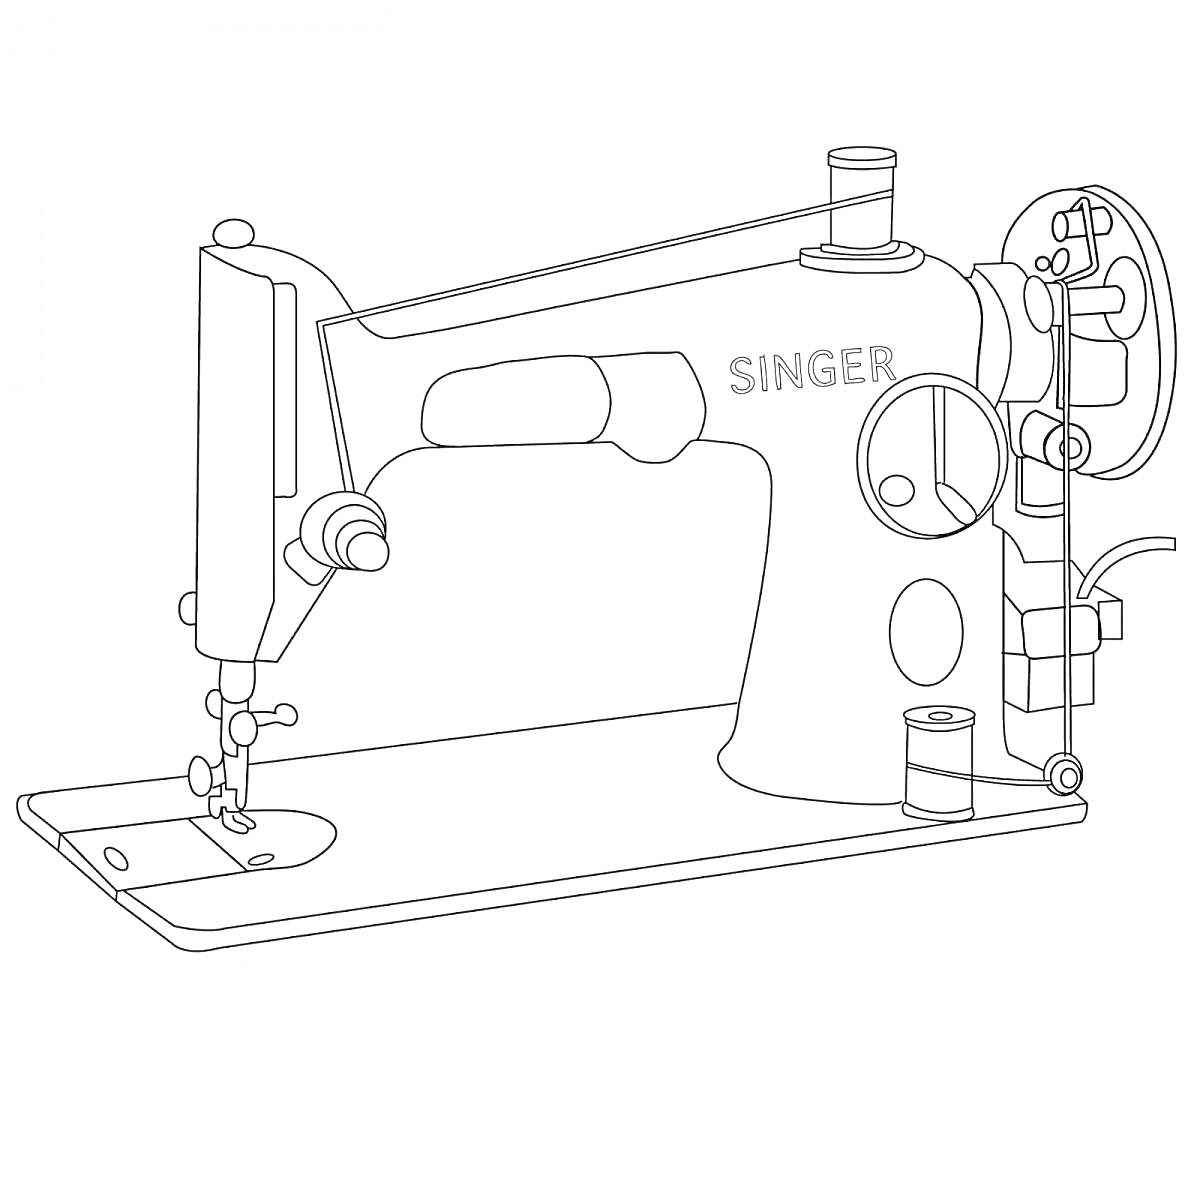 Раскраска Швейная машина Singer с платформой и катушкодержателями